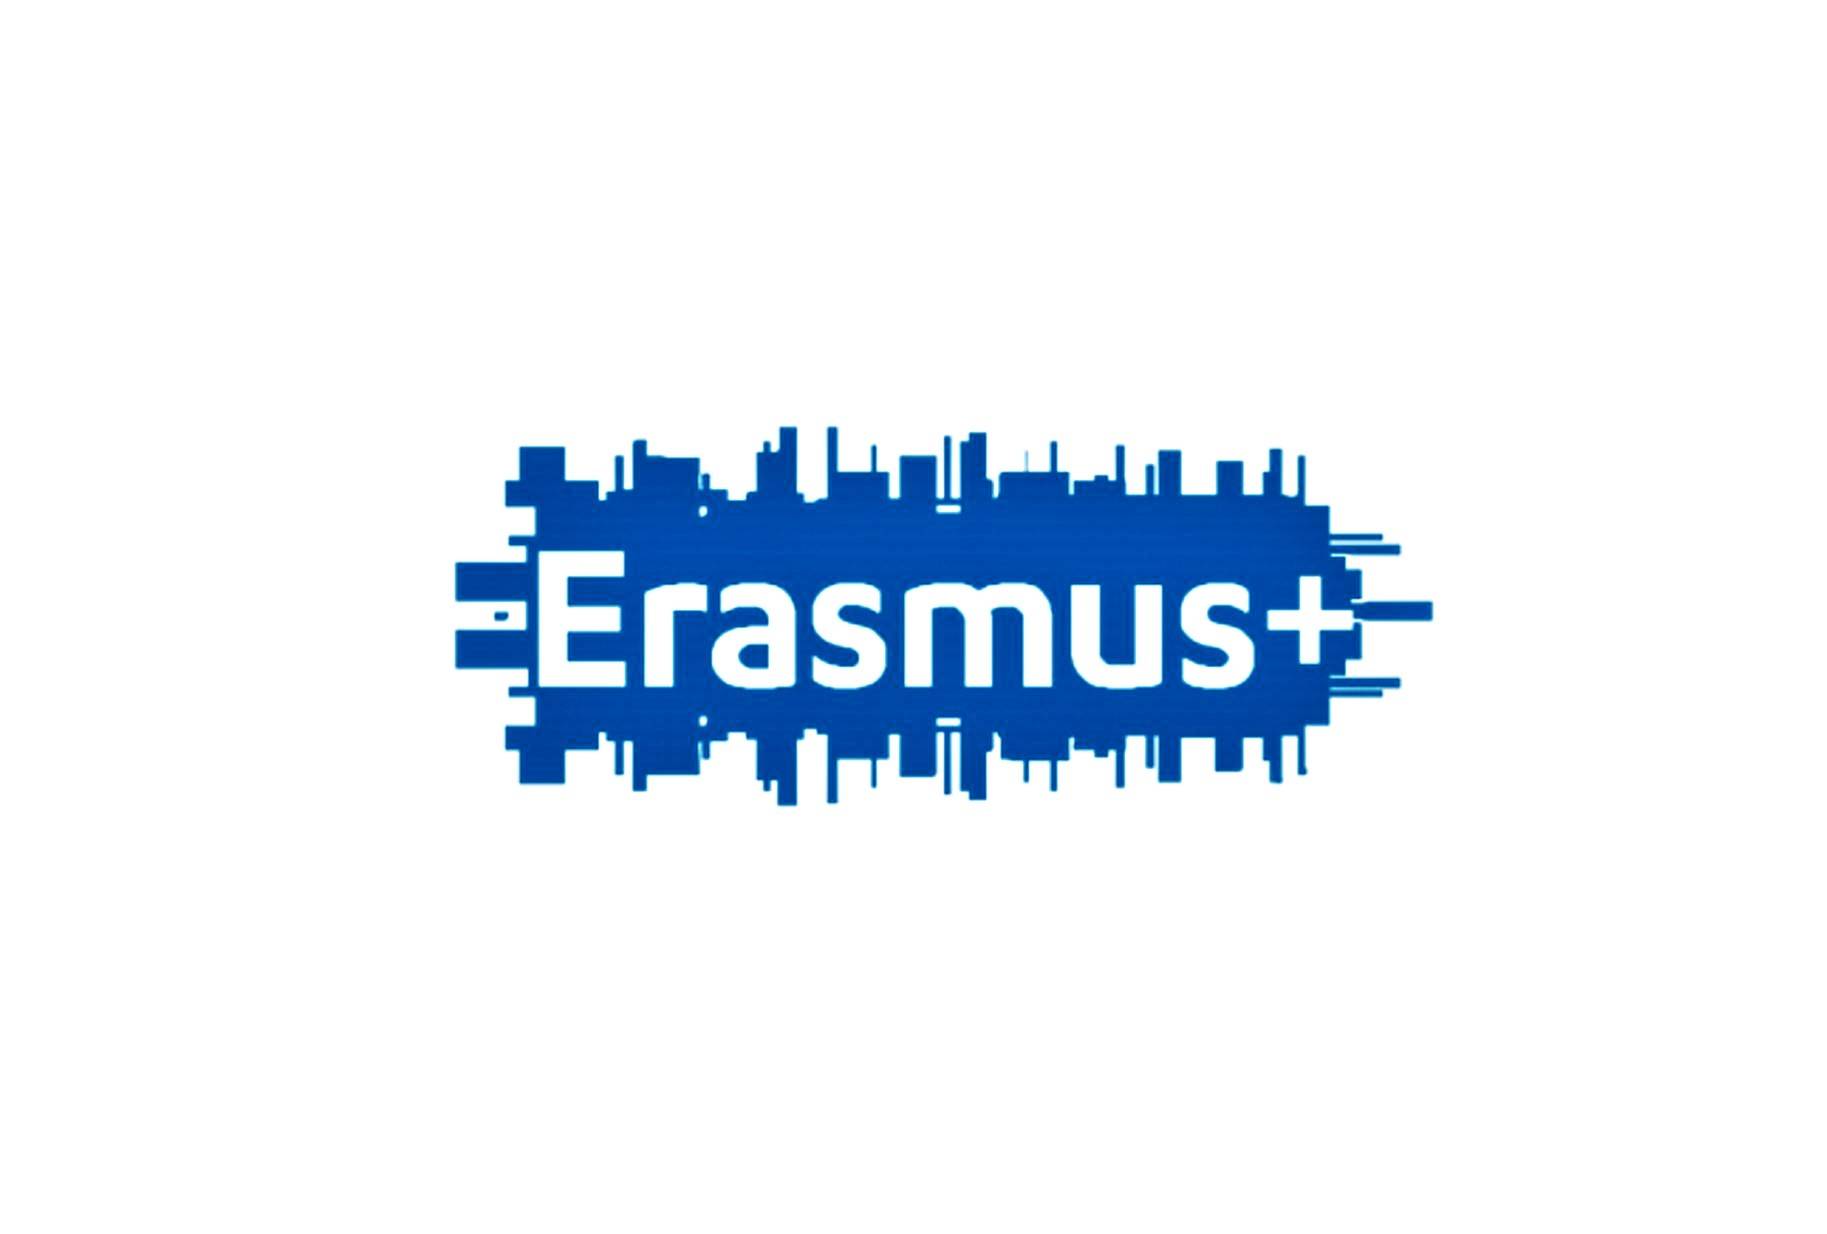 Candidaturas Erasmus + fecham a 7 de fevereiro